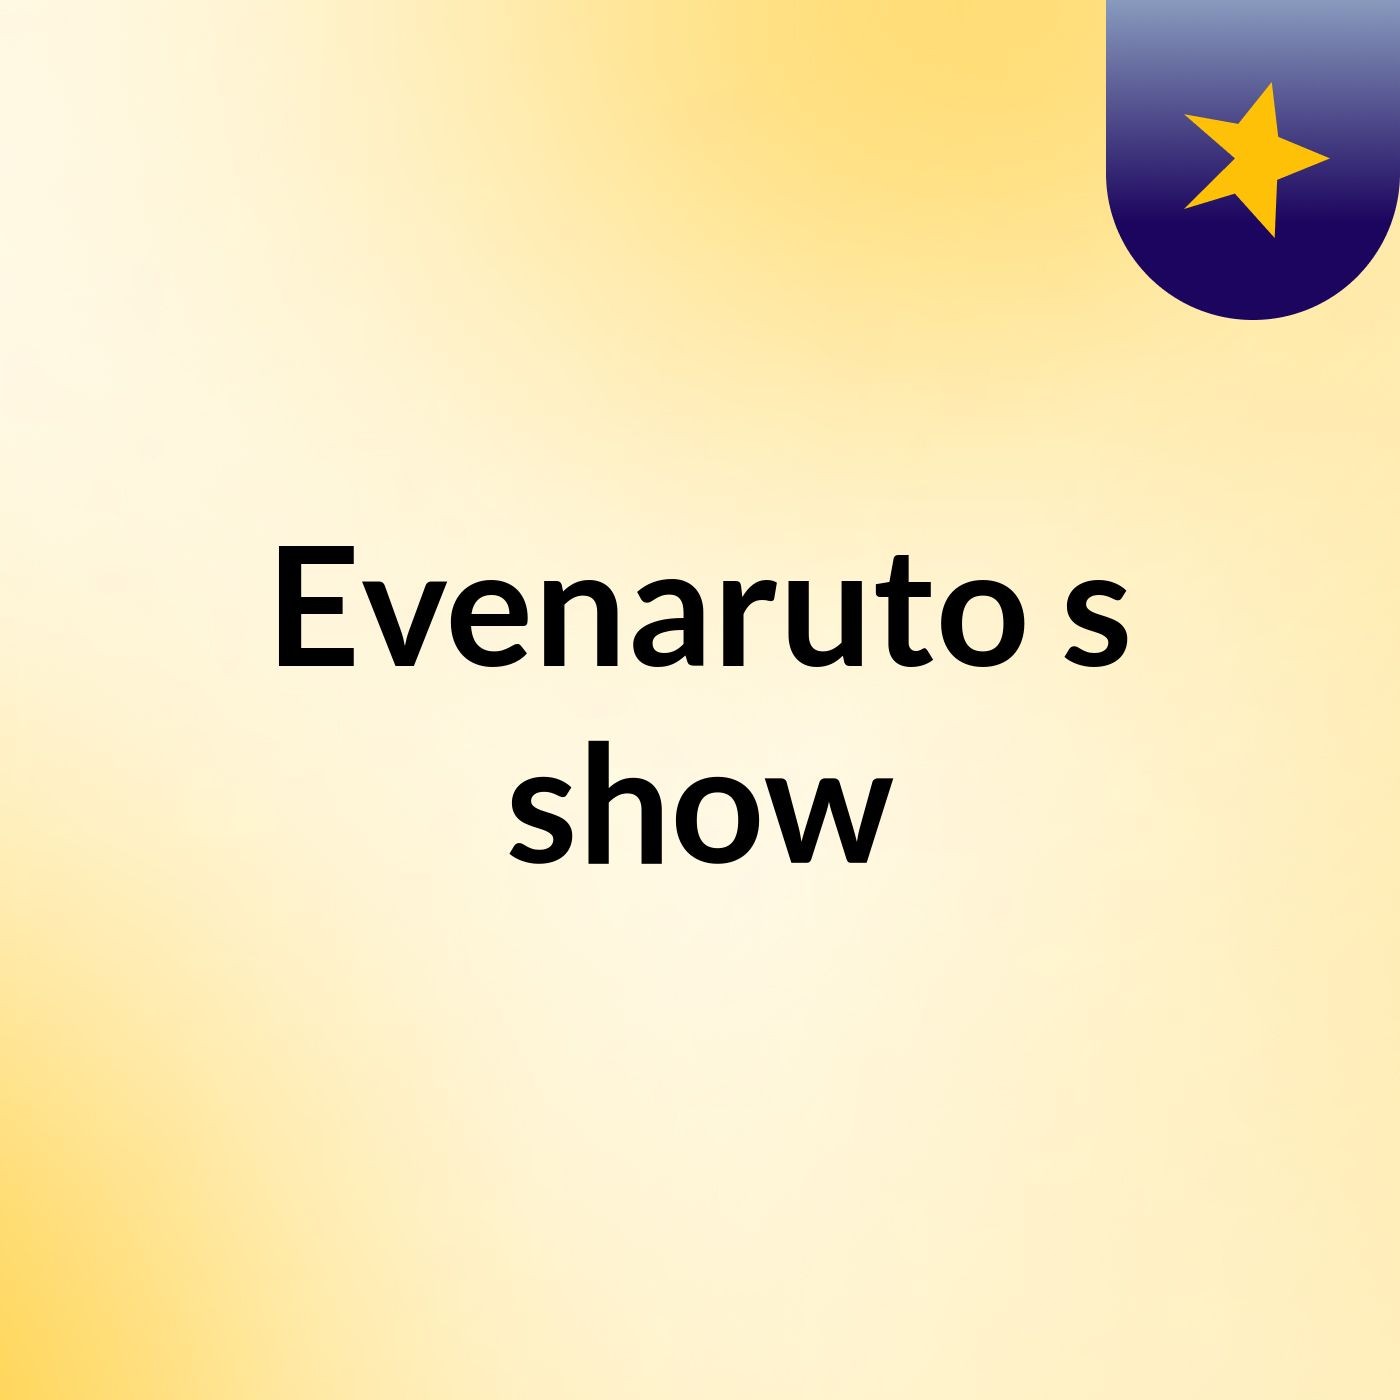 Evenaruto's show